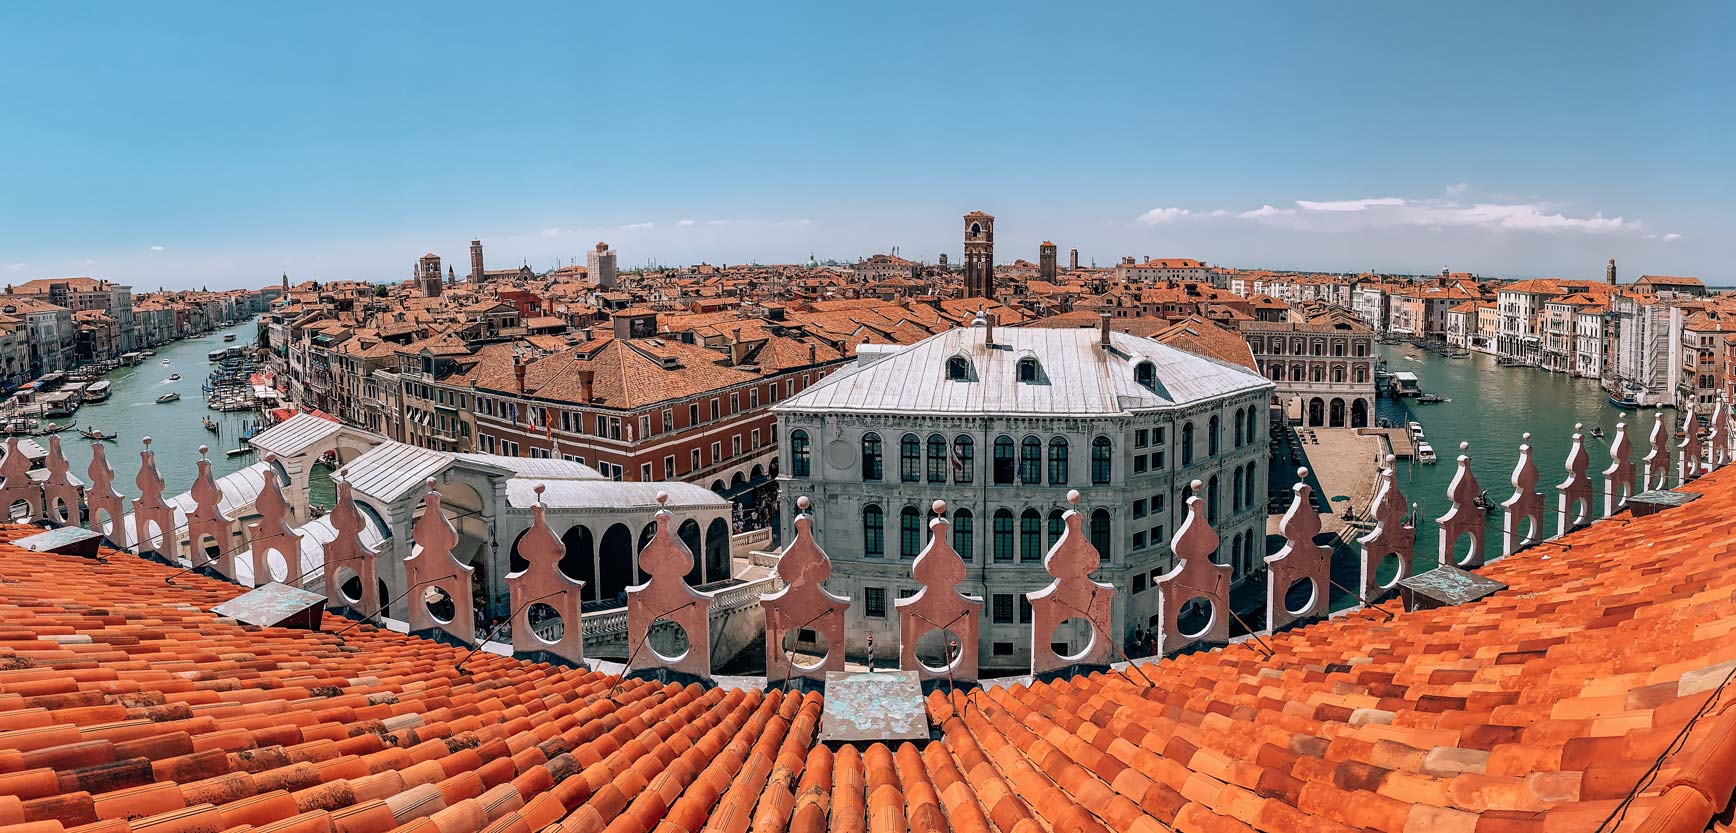 Mejores lugares para hacer fotos en Venecia